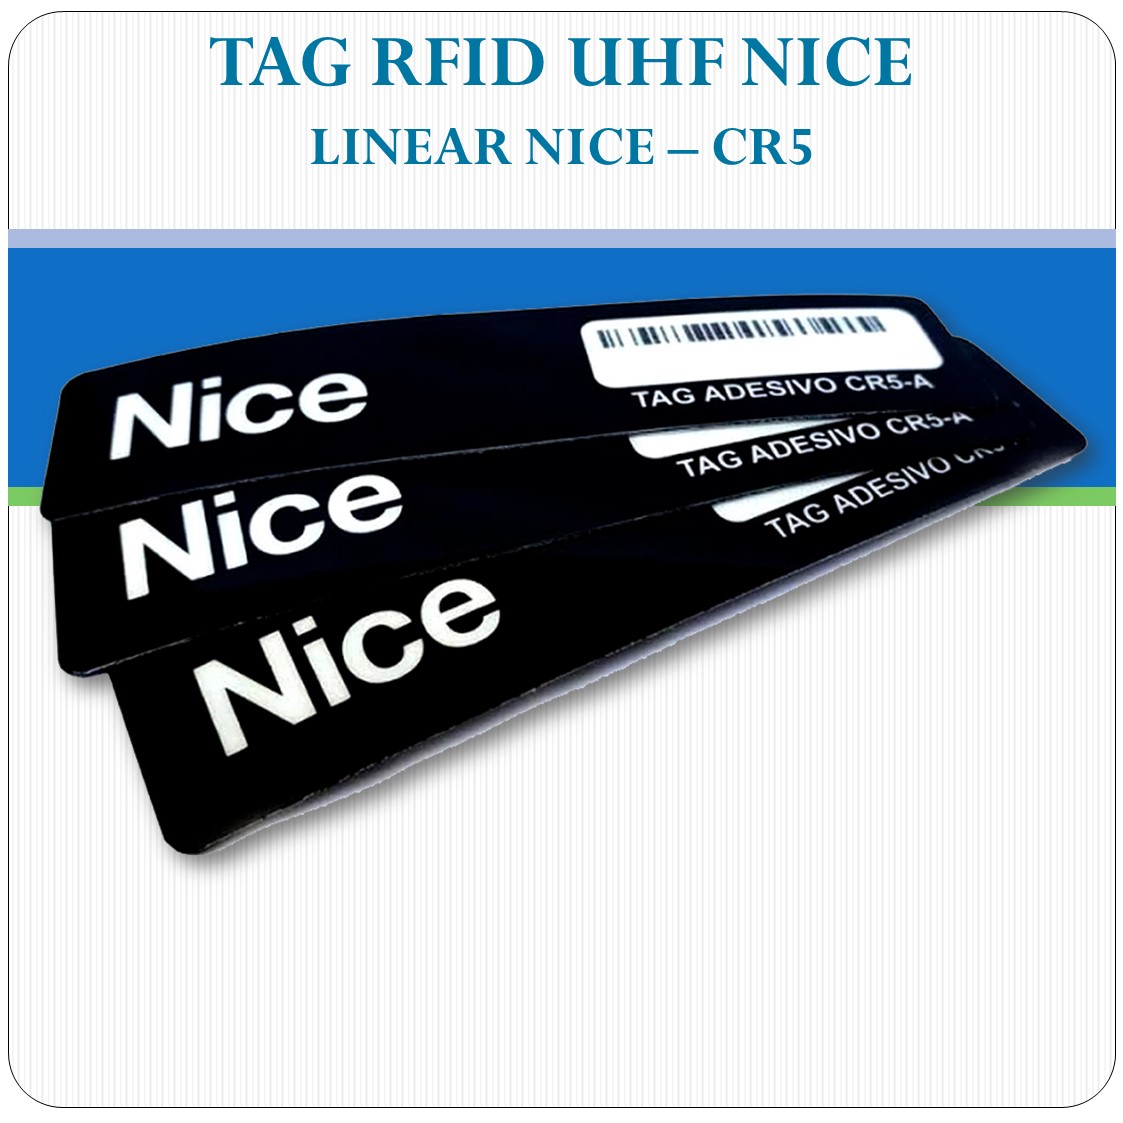 Tag Etiqueta RFID UHF Veicular - Linear NICE